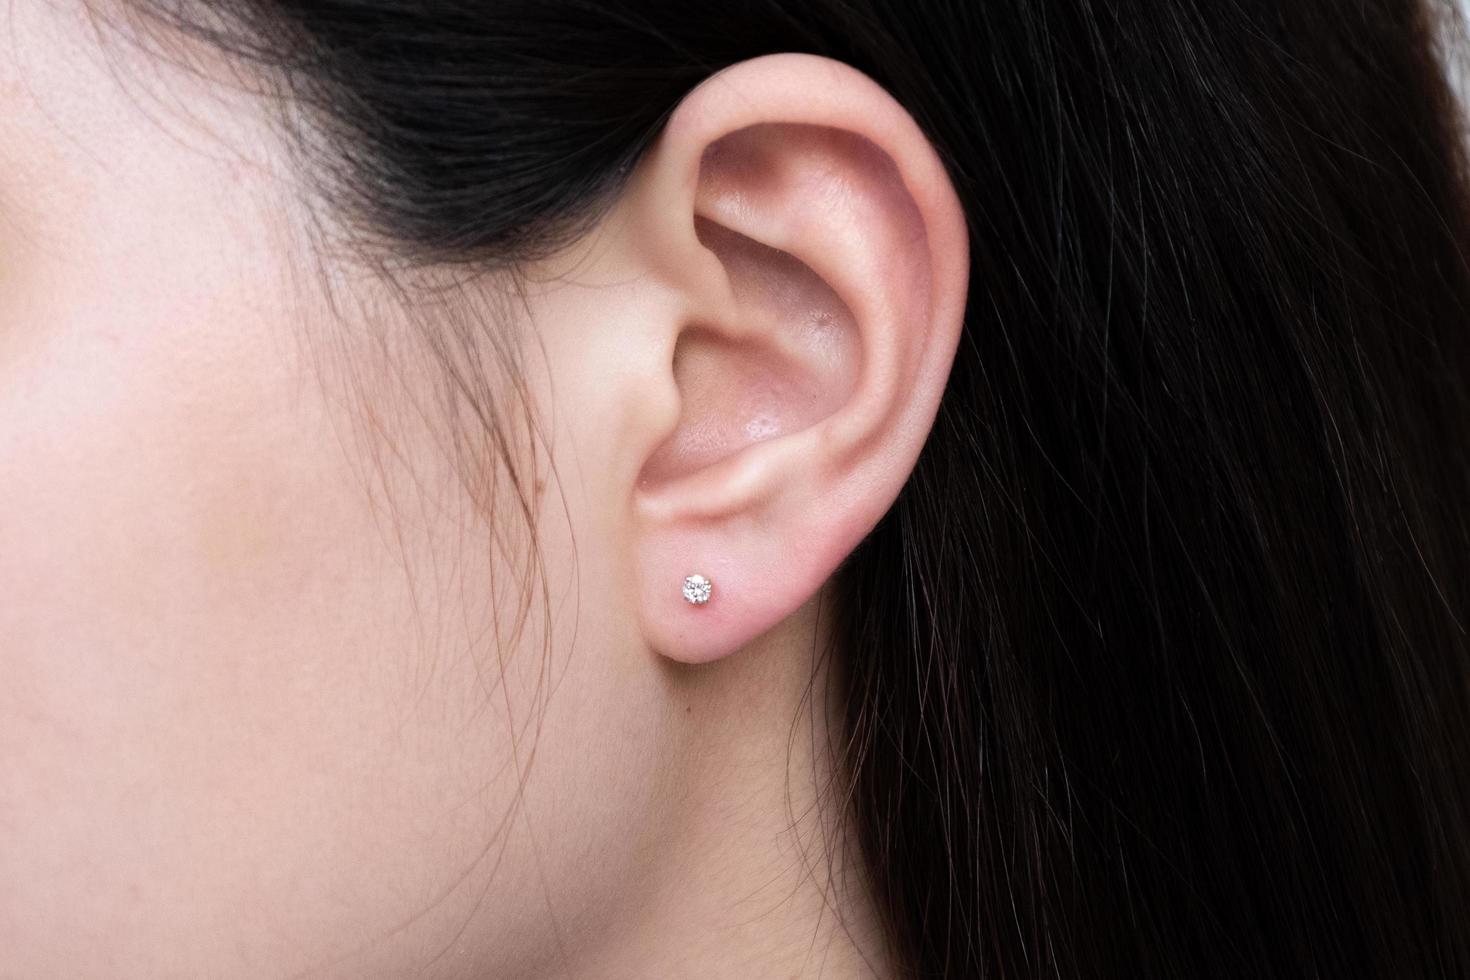 Diamantohrring am Ohr einer asiatischen Frau foto